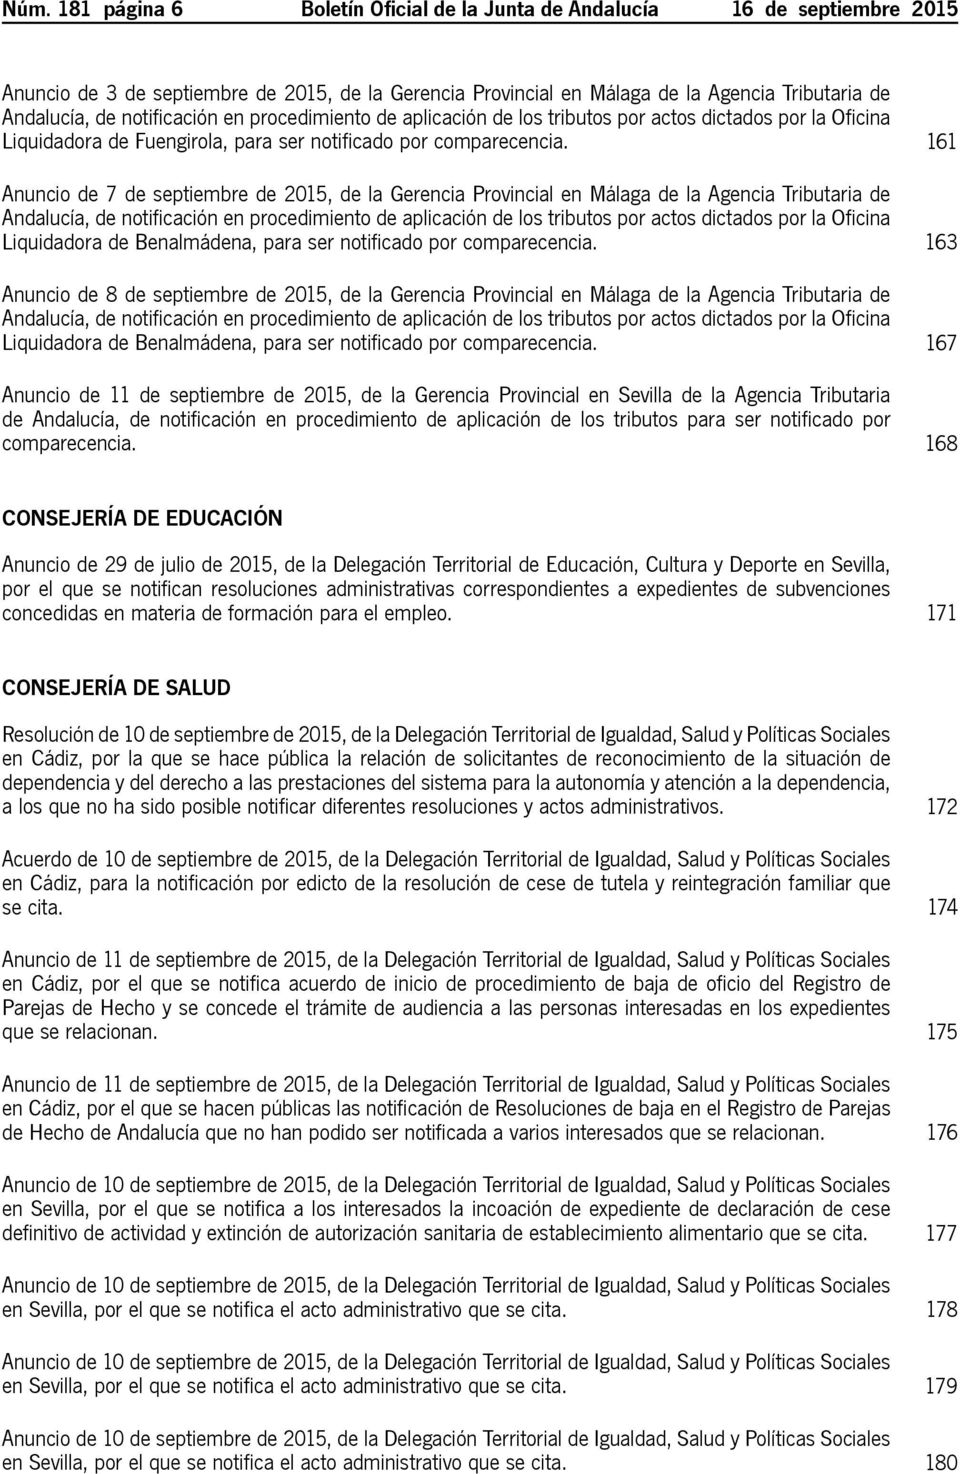 161 Anuncio de 7 de septiembre de 2015, de la Gerencia Provincial en Málaga de la Agencia Tributaria de Andalucía, de notificación en procedimiento de aplicación de los tributos por actos dictados